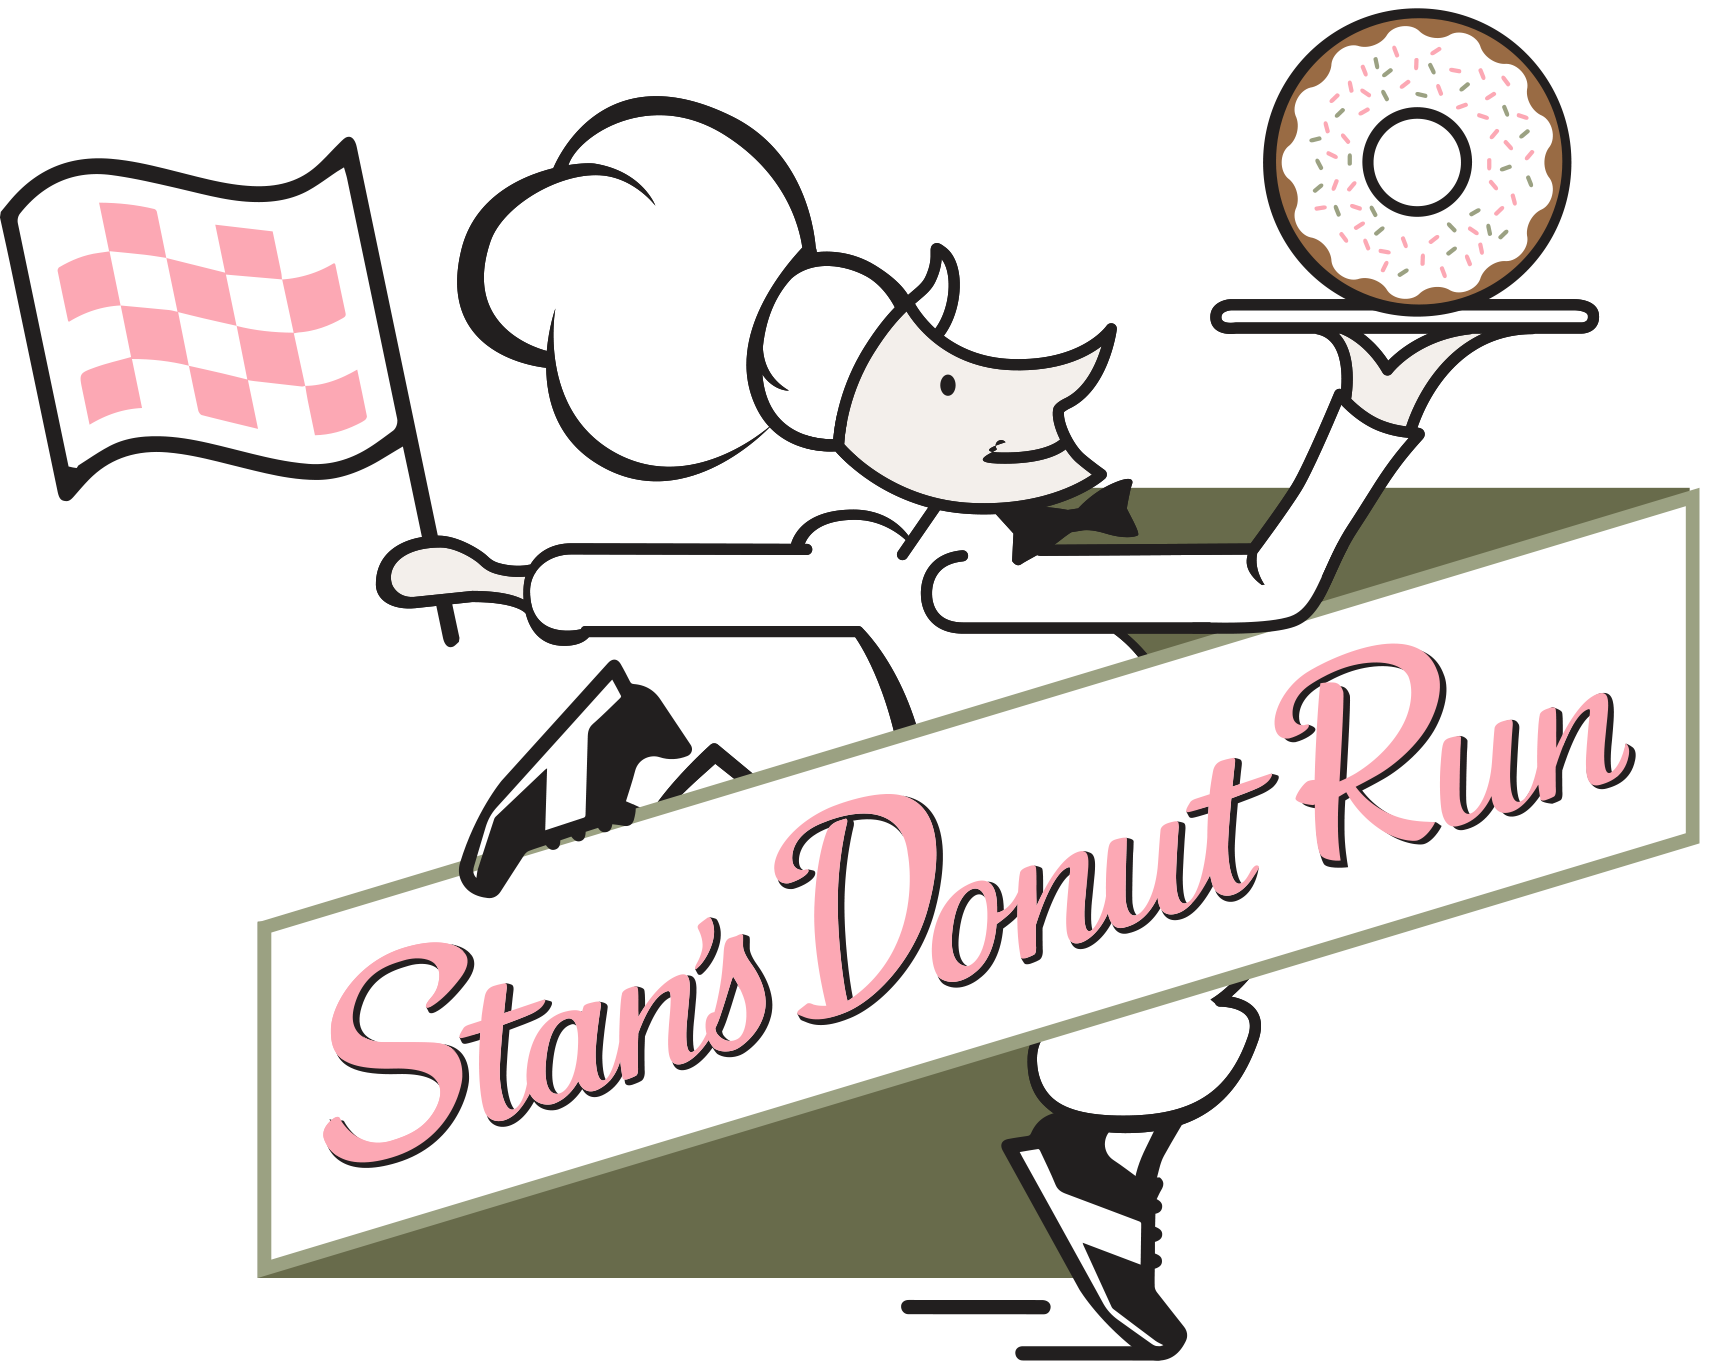 Stan's Donut 5K